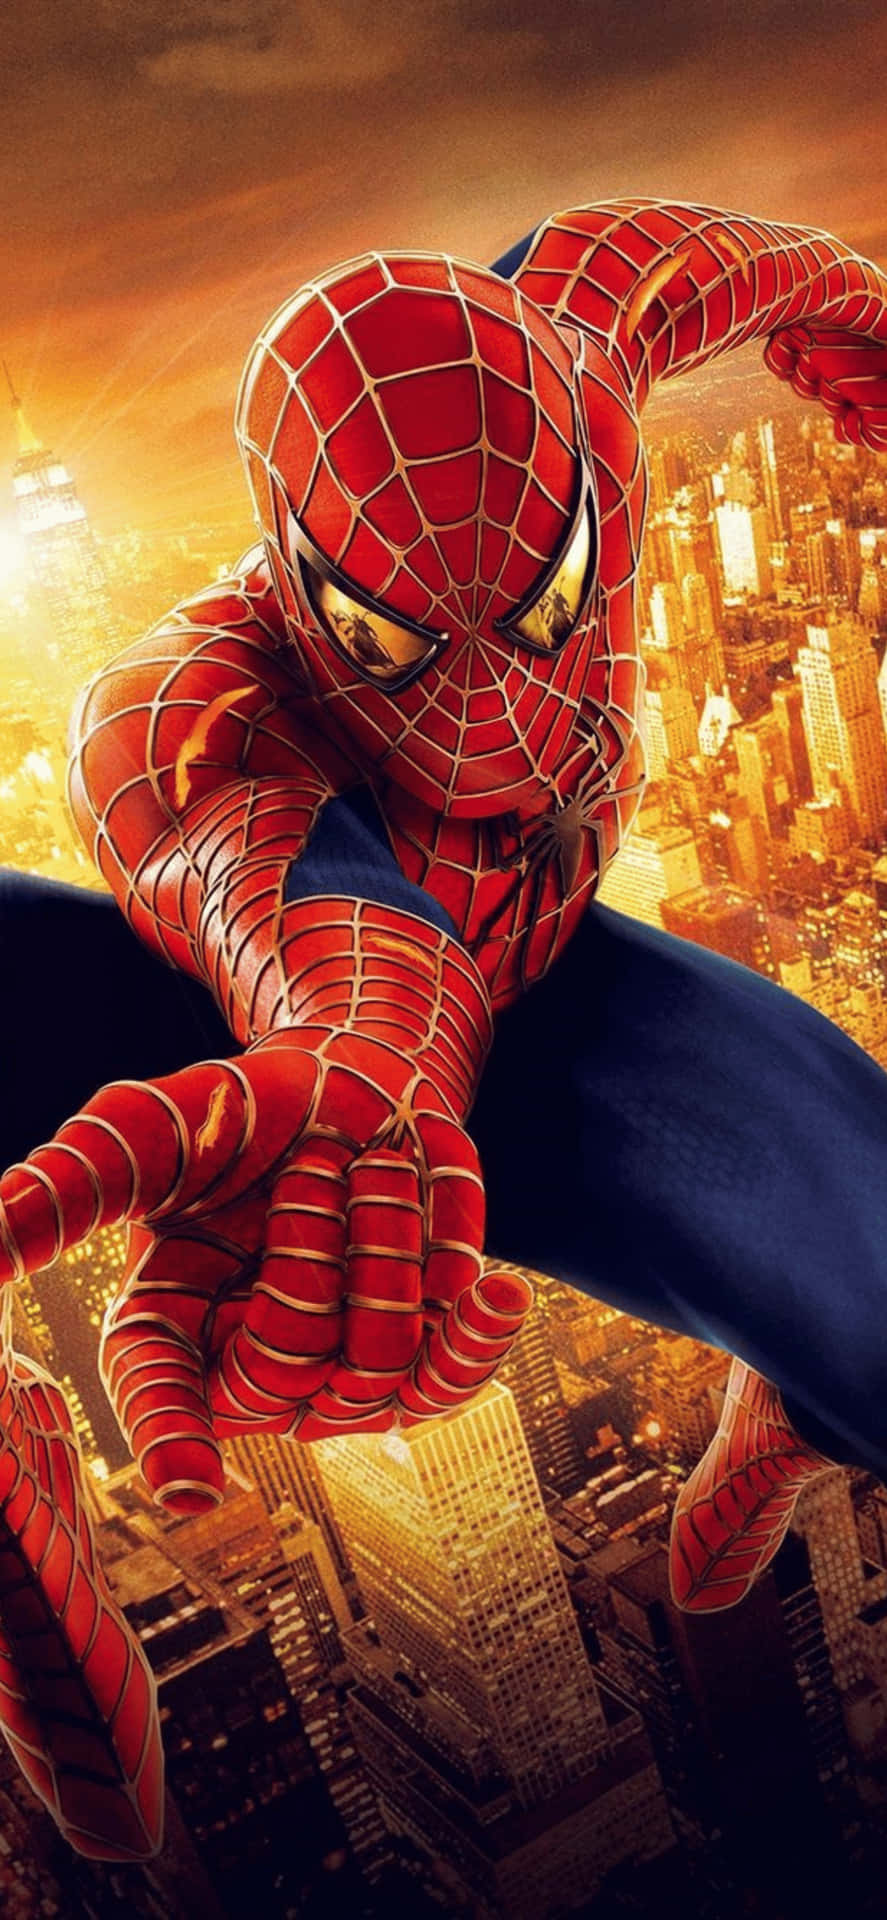 Fondode Pantalla De Spiderman, El Superhéroe De Marvel, Para Iphone Xs Max.